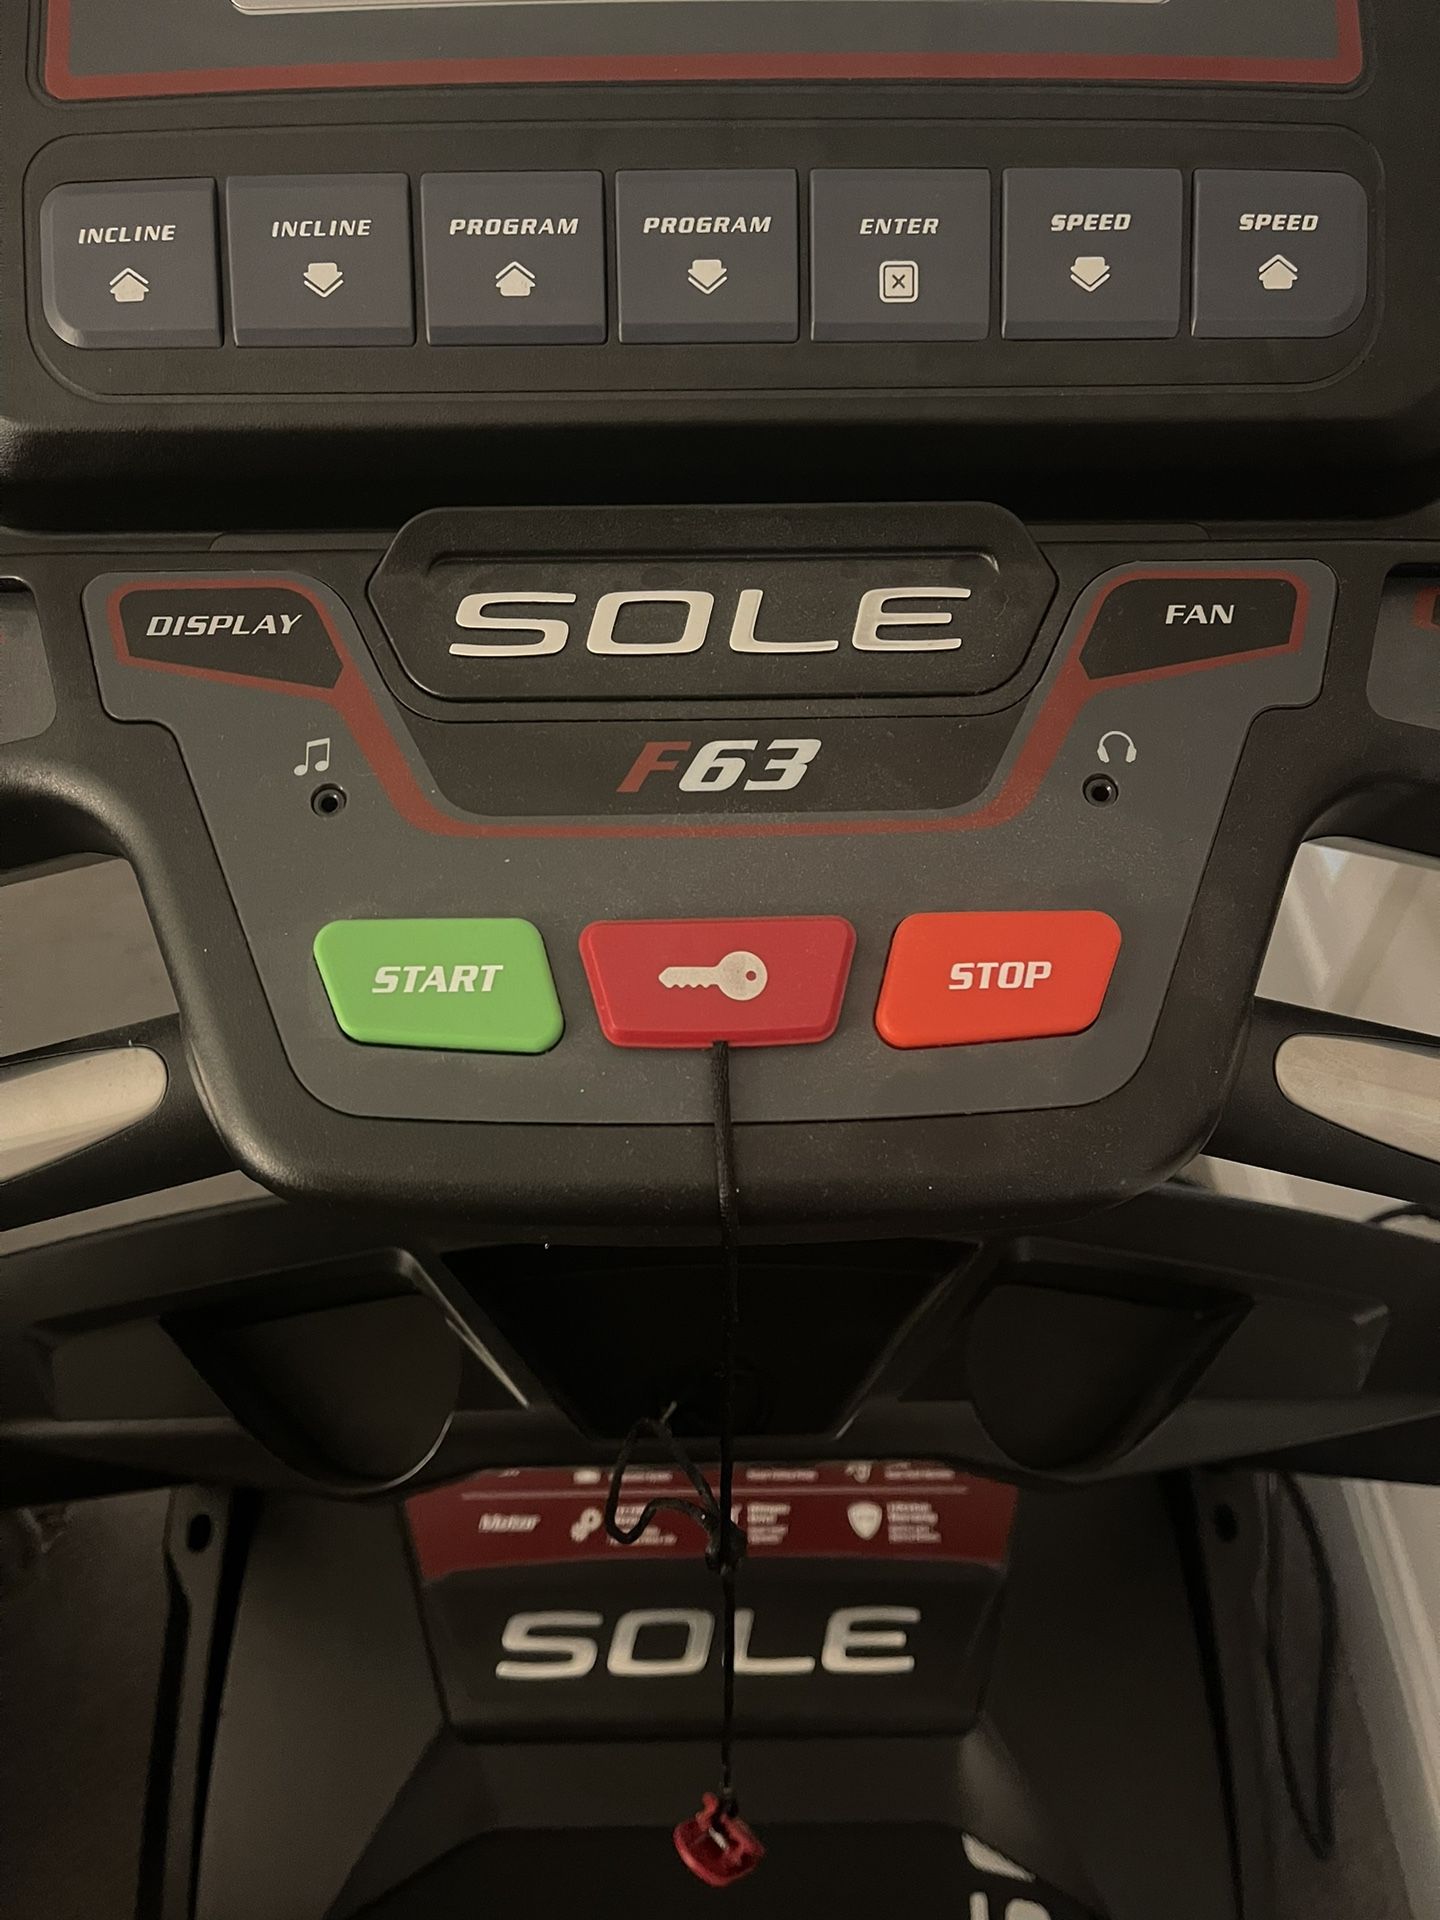 Sole F63 Treadmill For Sale